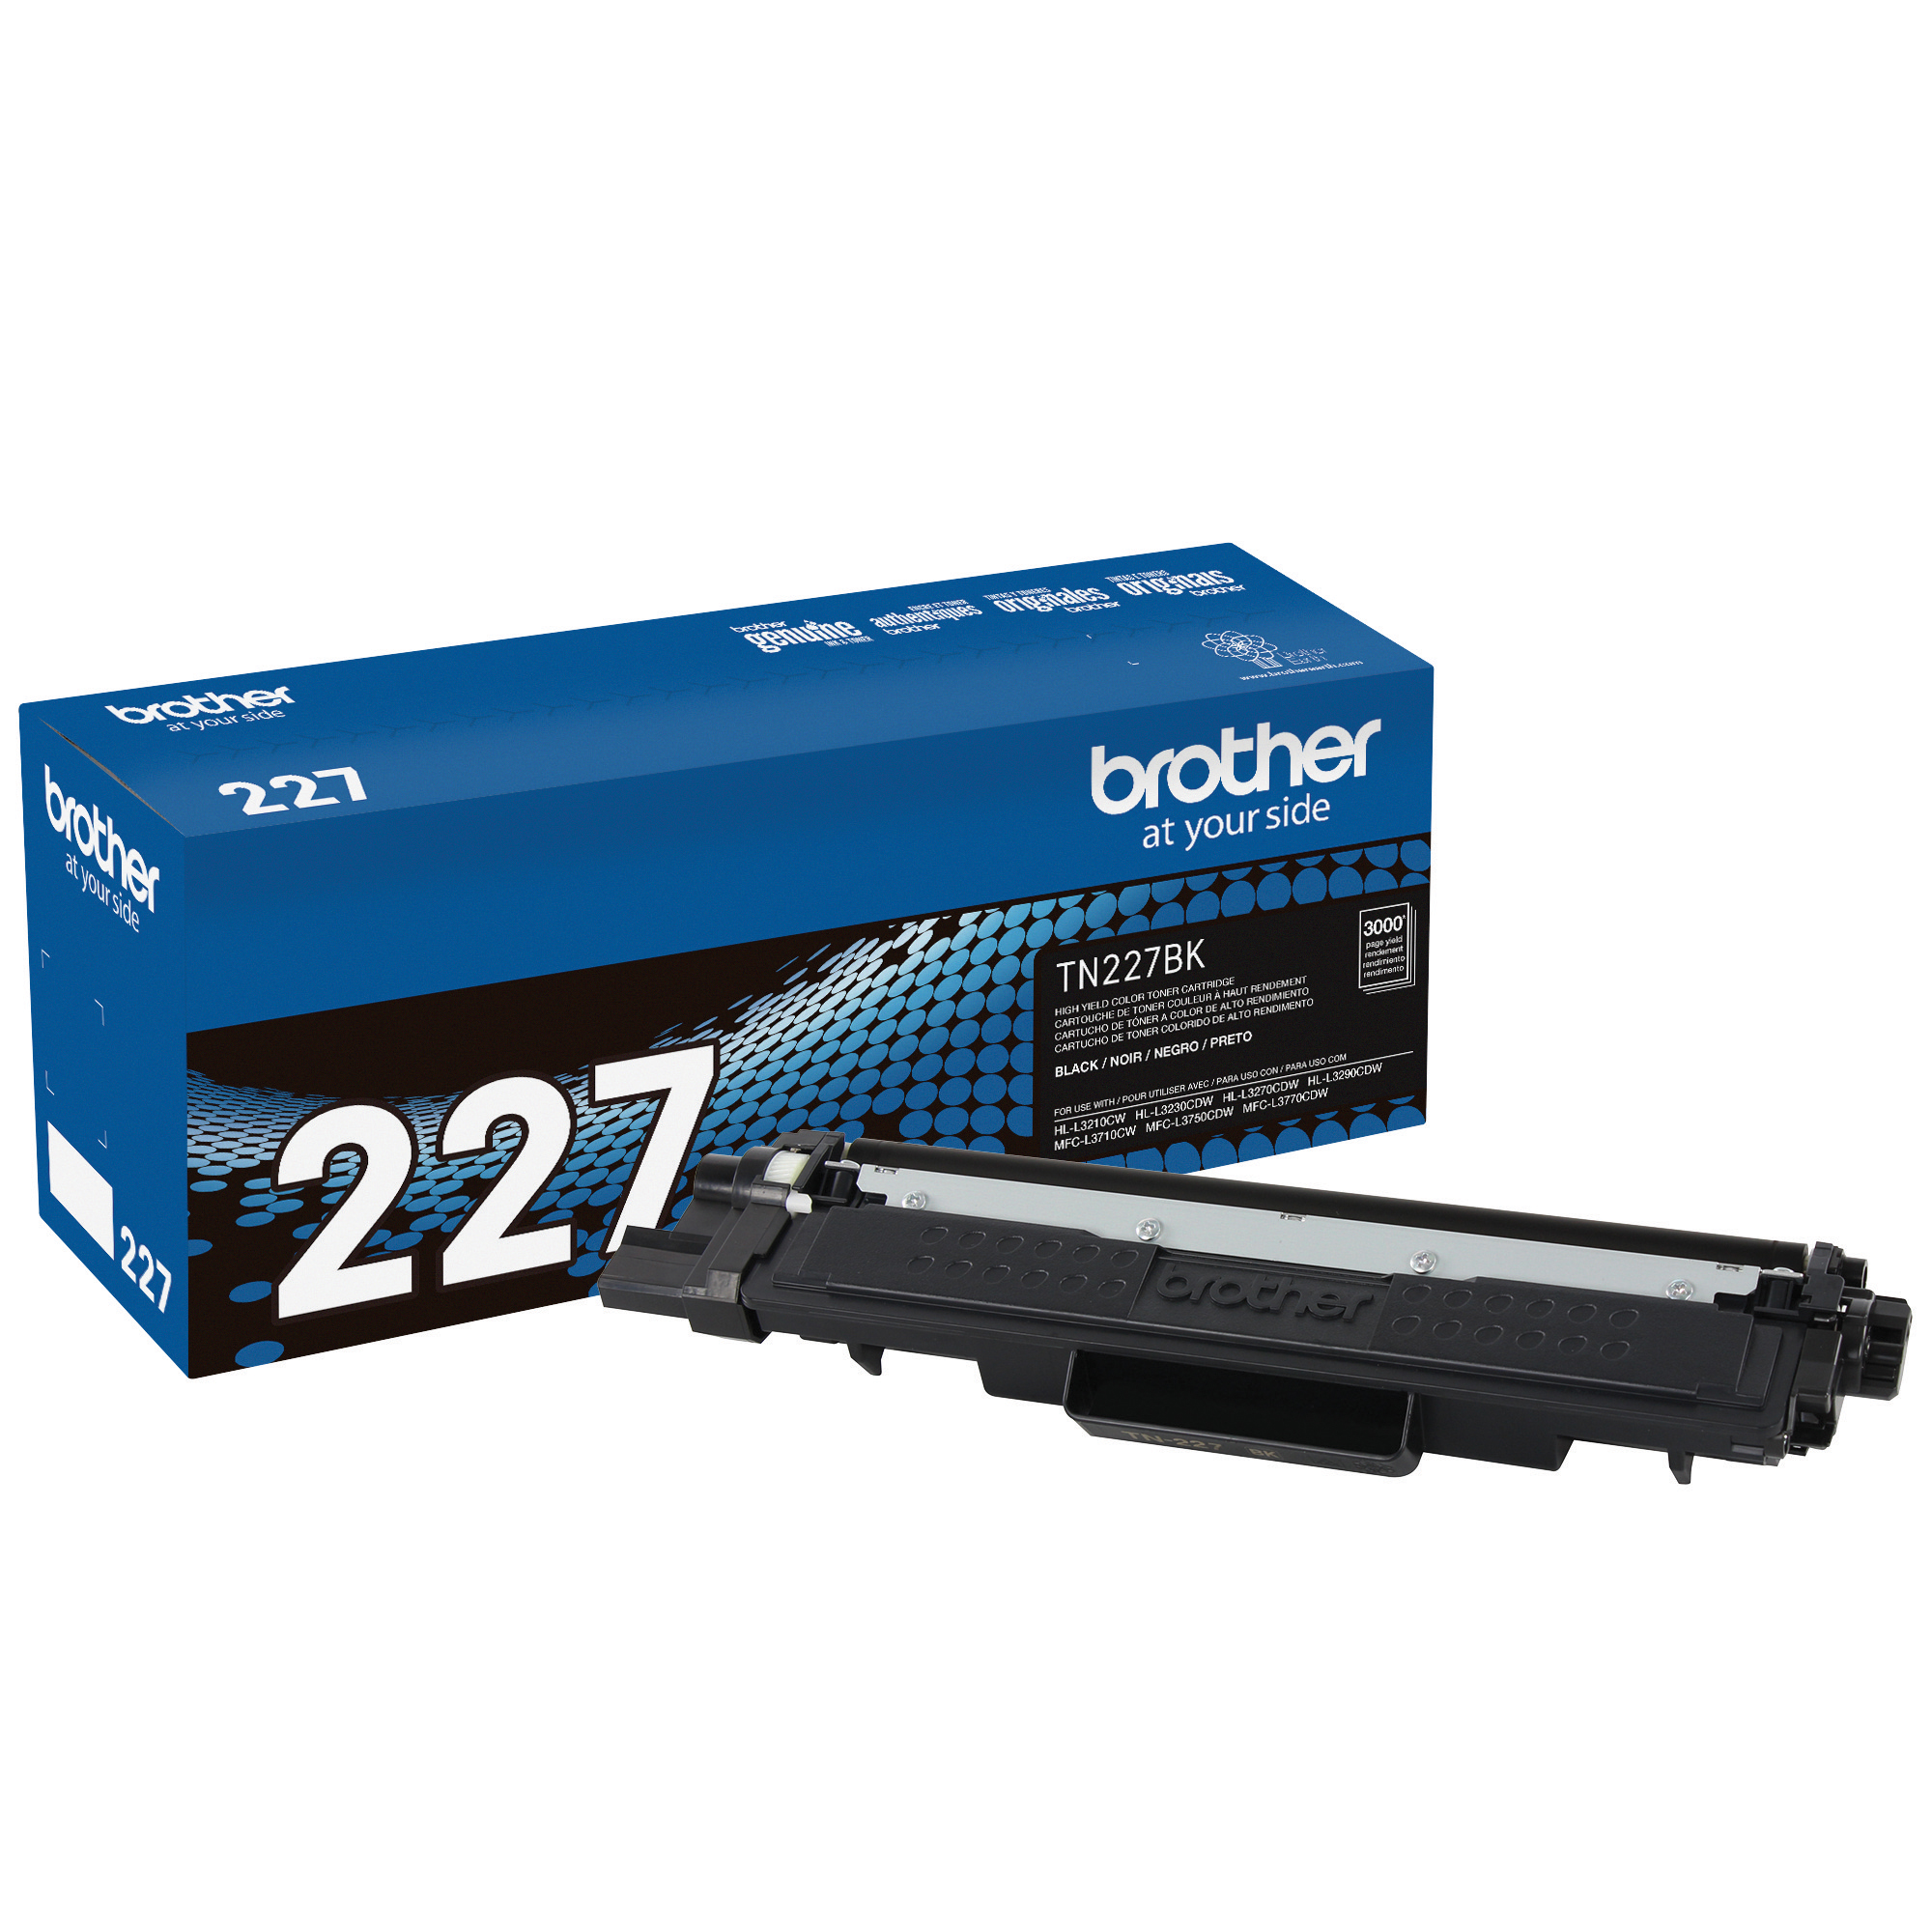  BRTMFCL3710CW  Brother - Imprimante laser couleur numérique  tout-en-un MFC-L3710CW